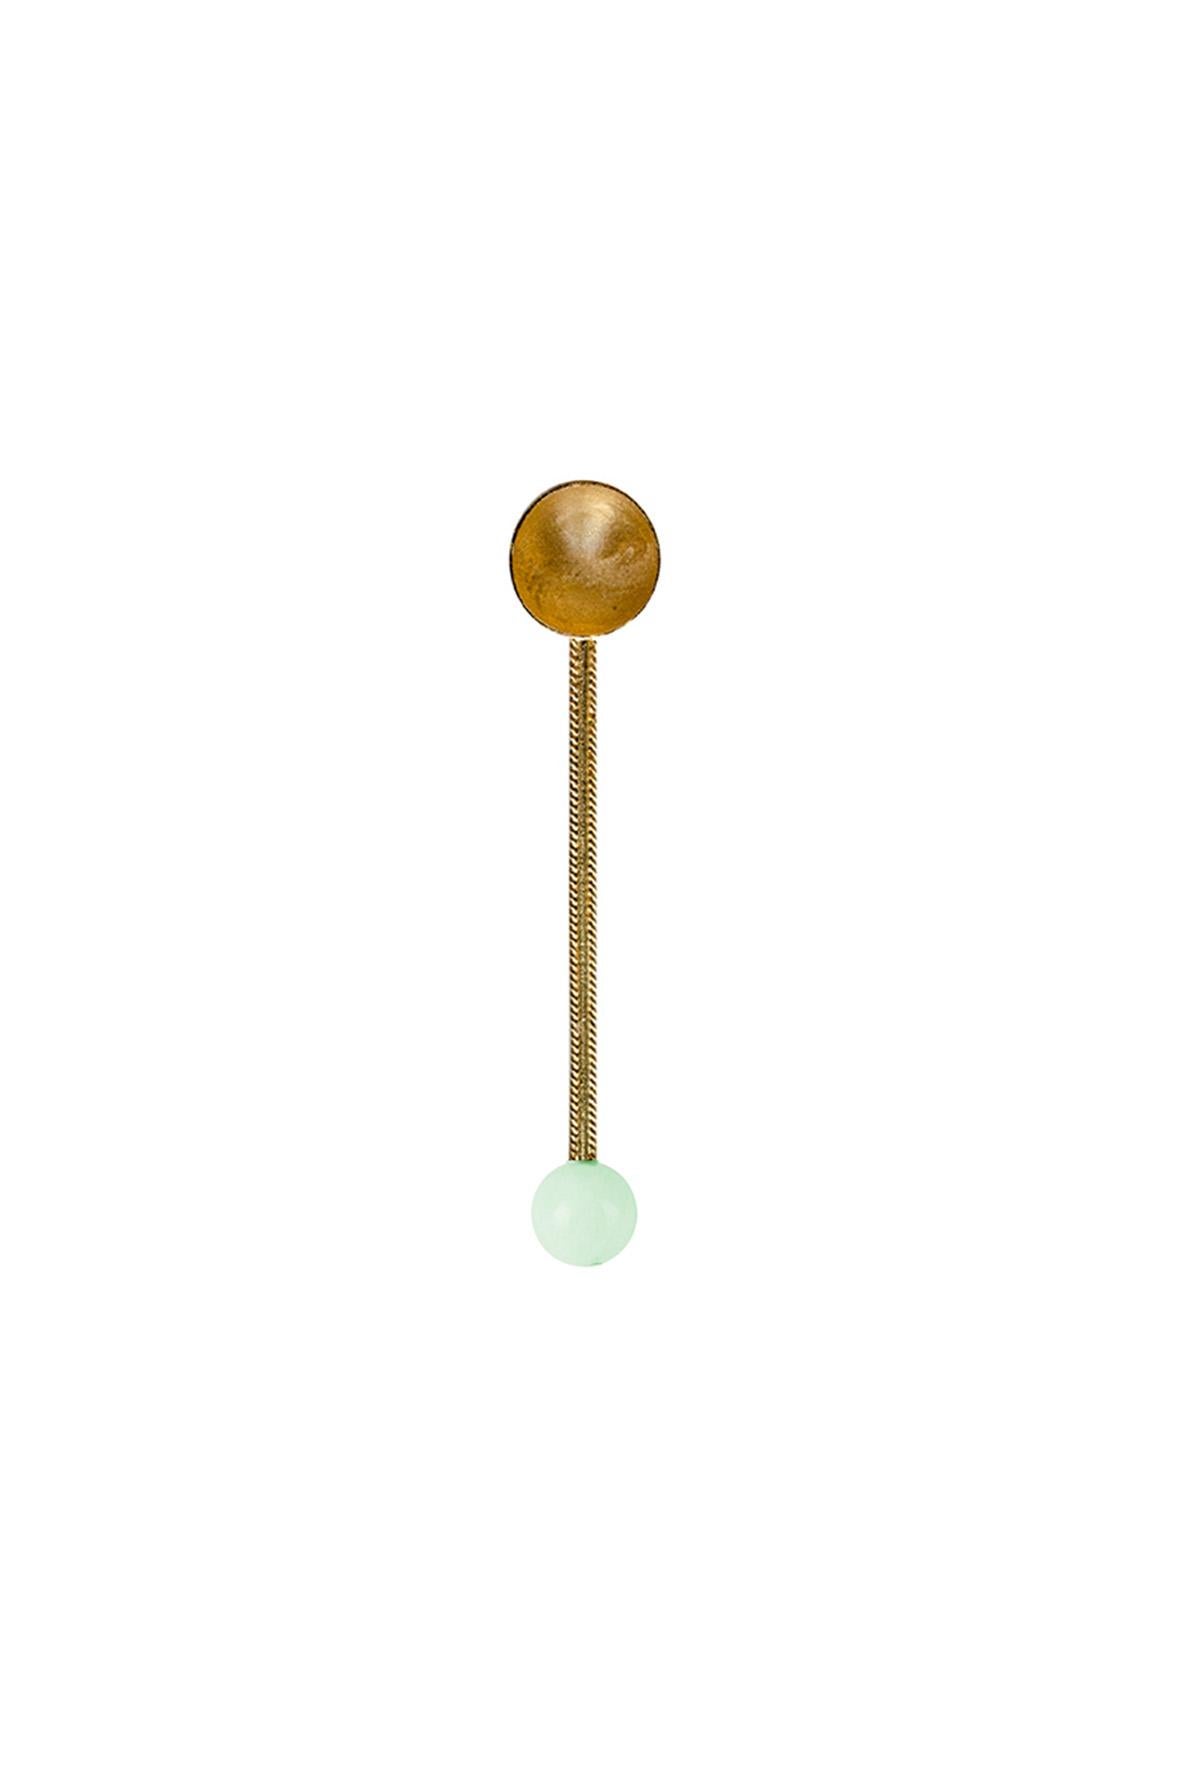 Contemporary Gold Plated Spoon Green Quartz Stone Handcrafted Natalia Criado For Sale 1